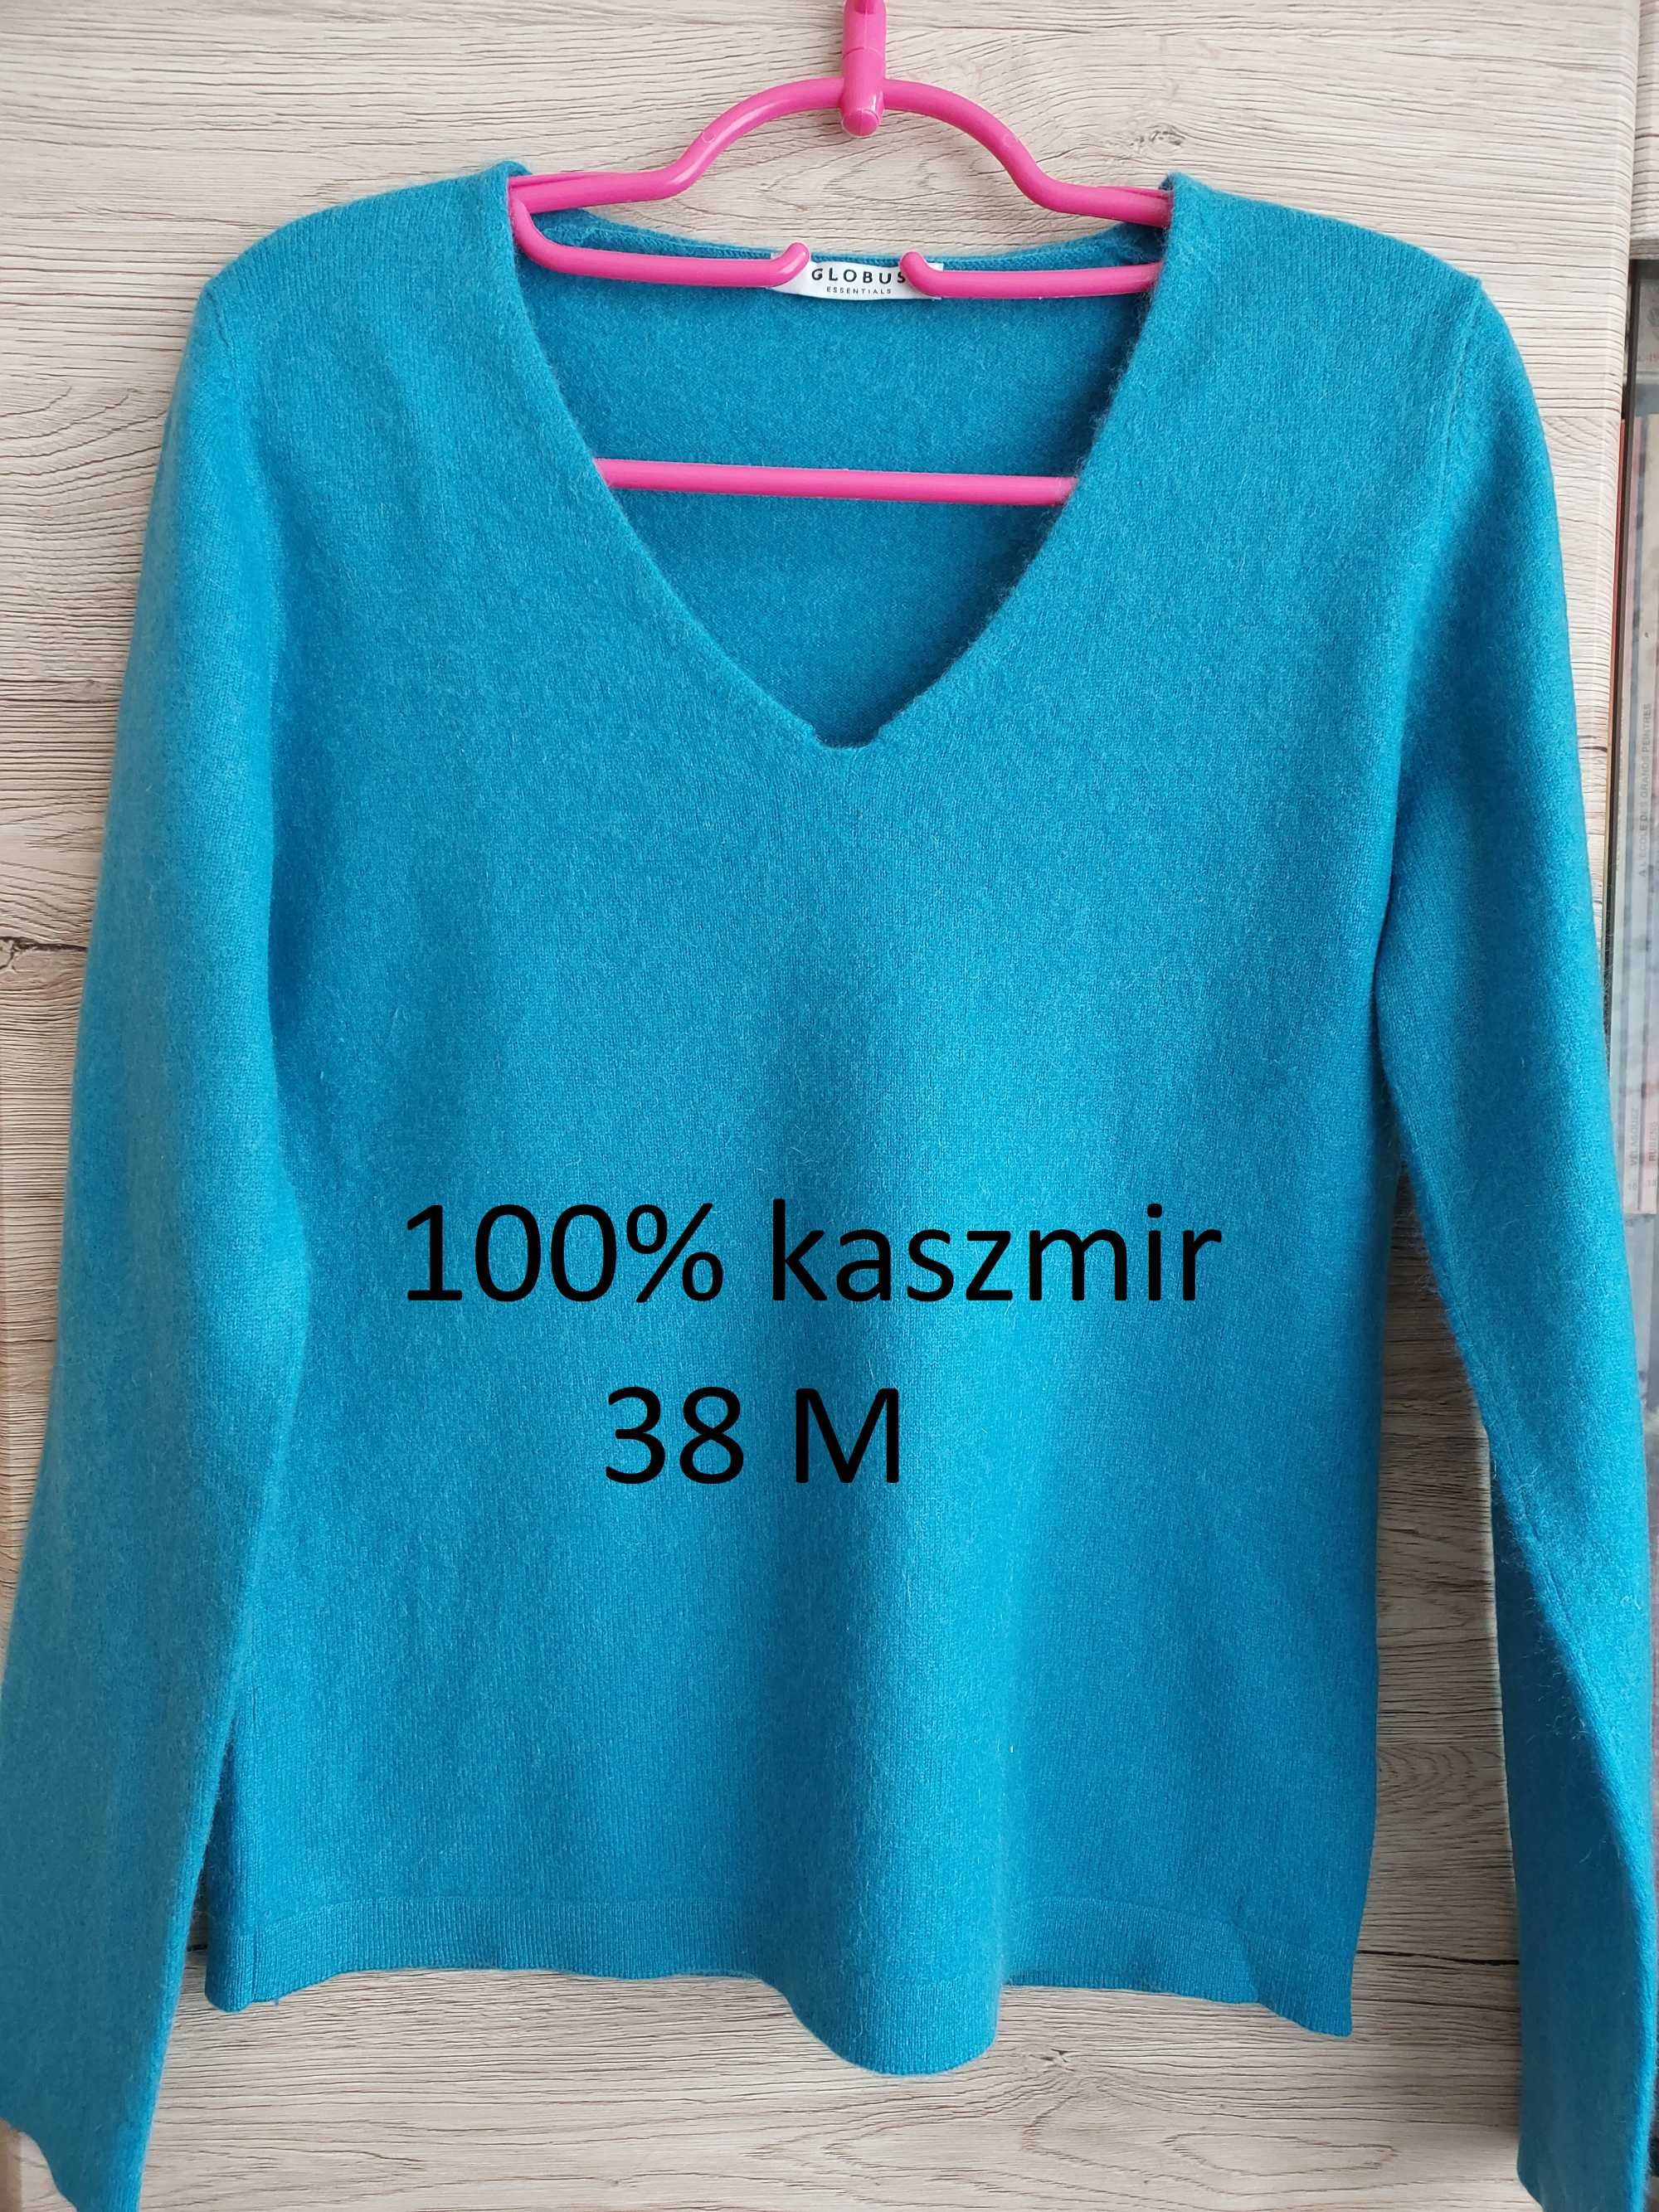 100% kaszmir 38 M Globus sweterek kaszmirowy klasyczny niebieski